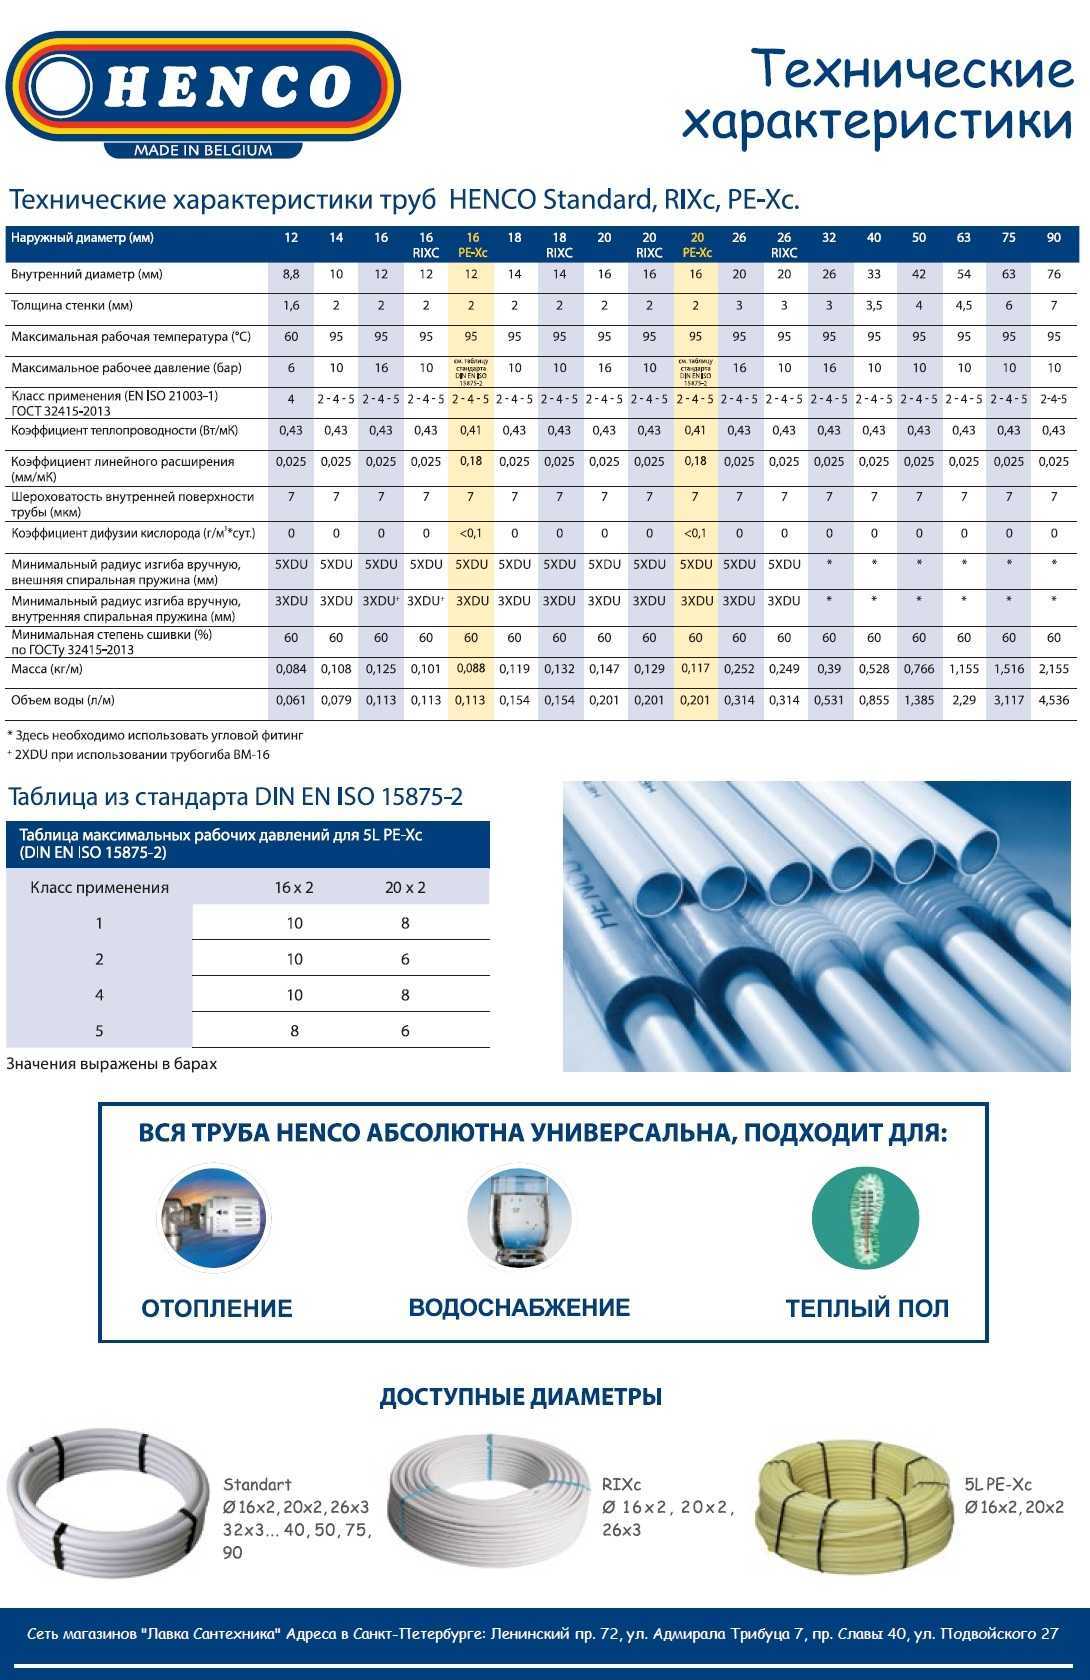 Металлопластиковая труба: характеристики, какую температуру эксплуатации выдерживает металлопластик, рабочее давление, свойства, описание использования